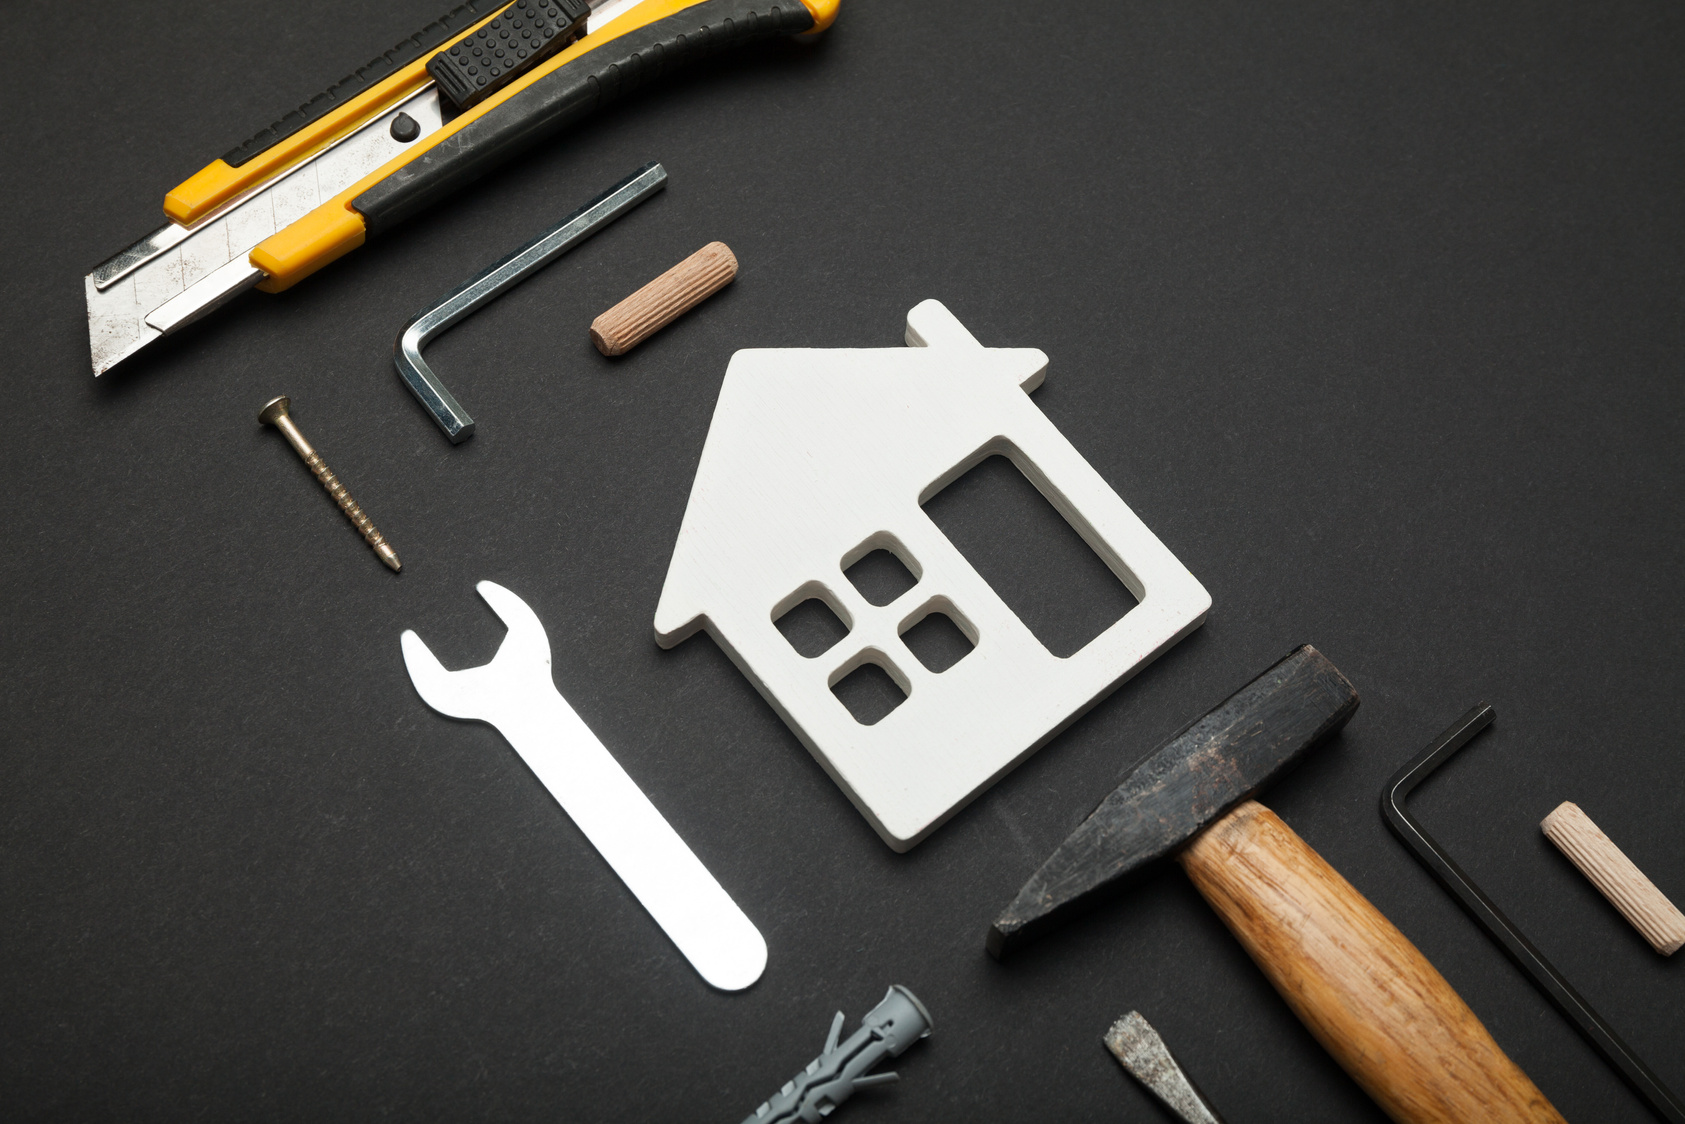 Fix house maintenance, sale property. Home building